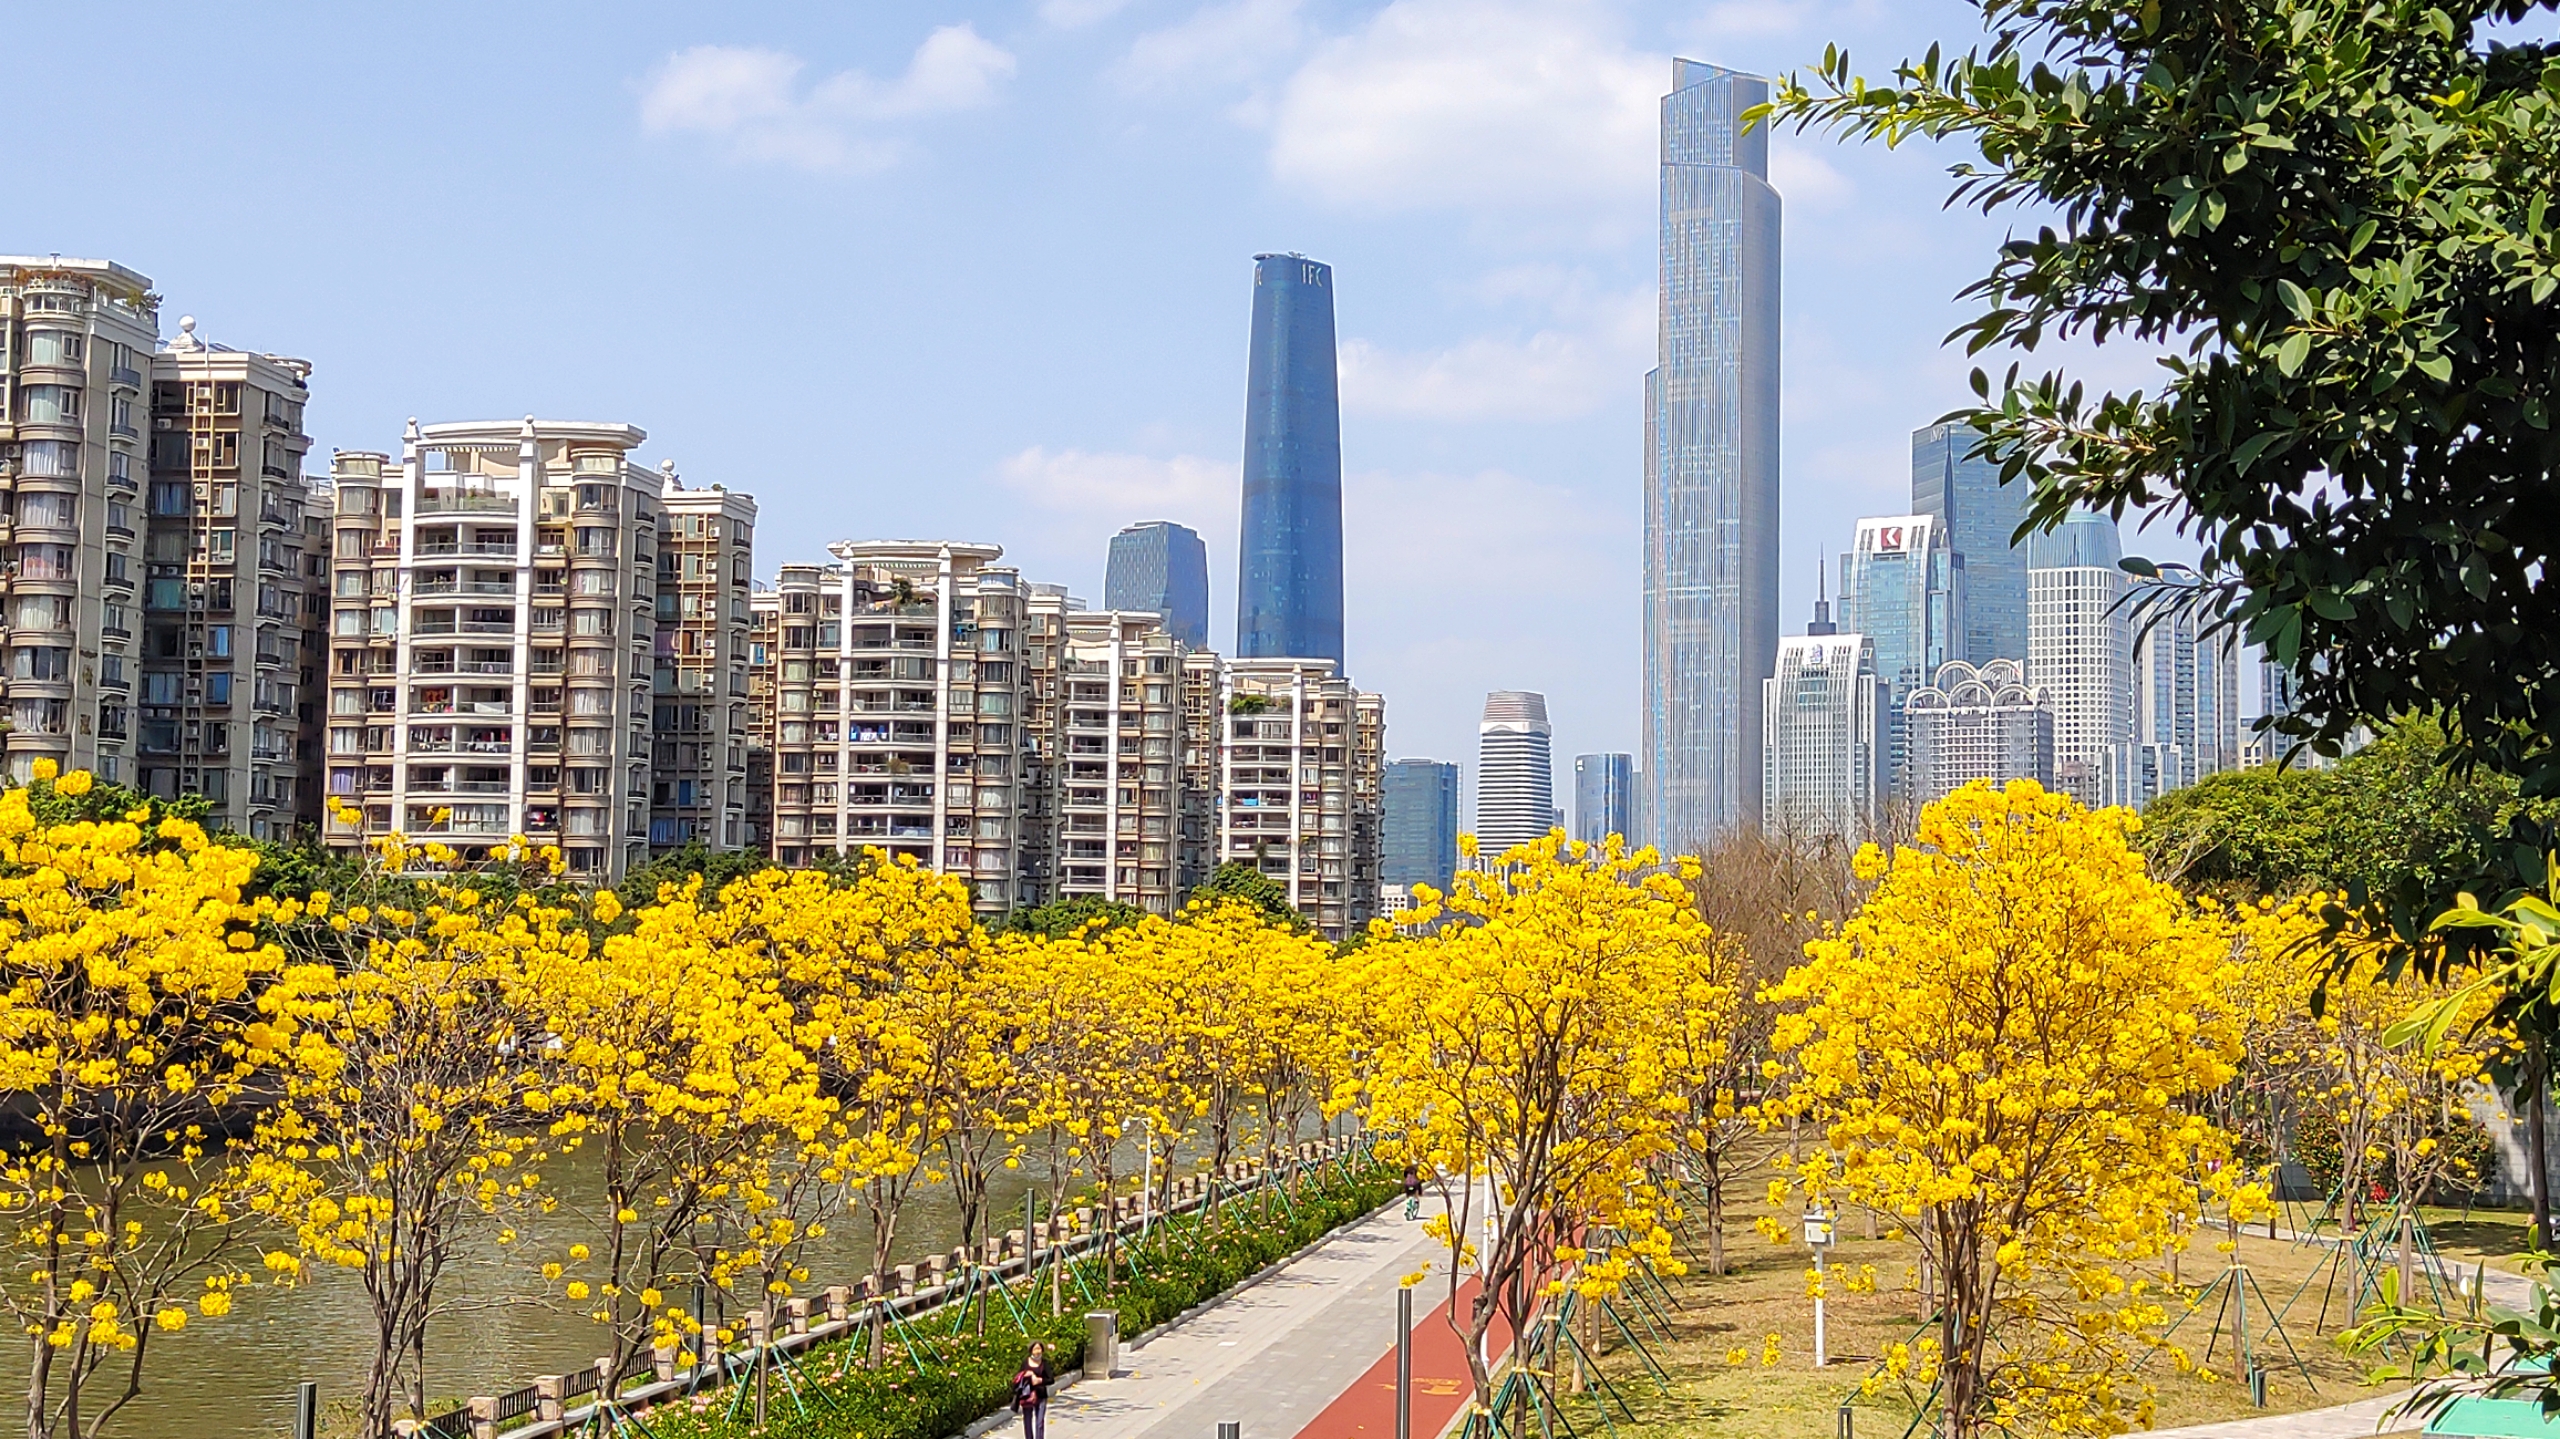 曼哈顿之广州分顿,曼哈顿之秋—广州之春  景色惊现磨碟沙公园